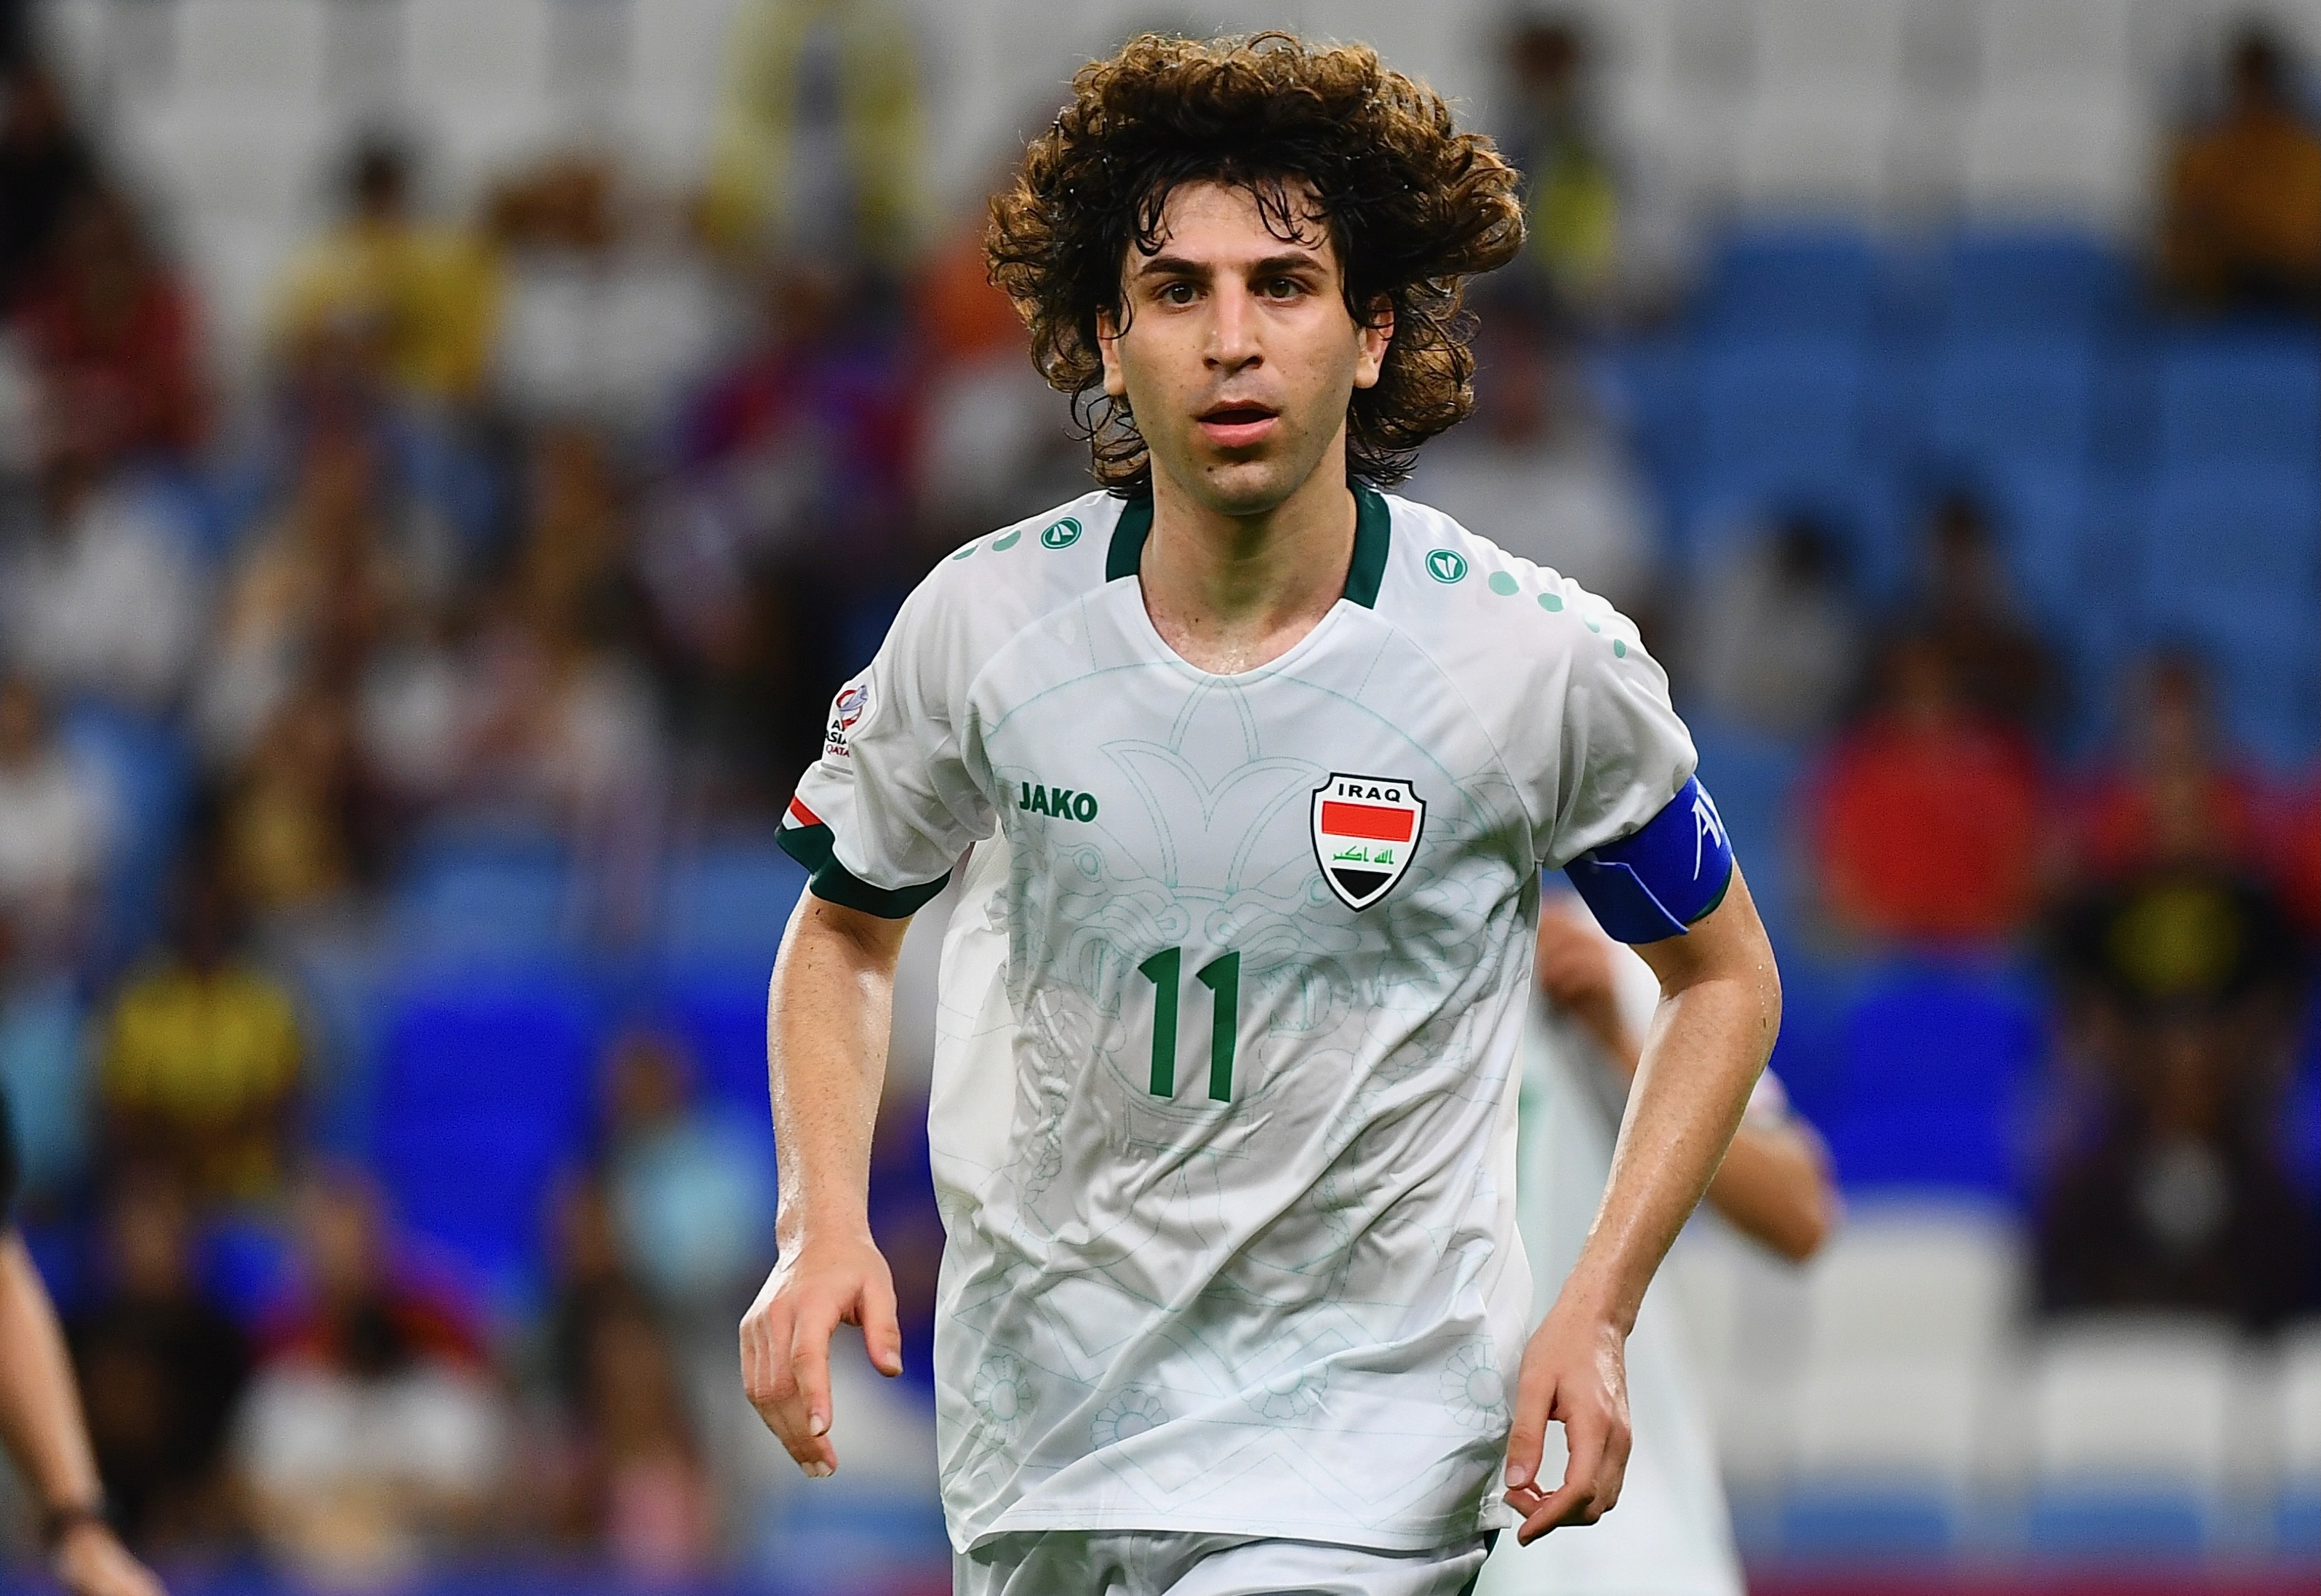 Dàn cầu thủ thi đấu ở châu Âu của U23 Iraq - ảnh 7